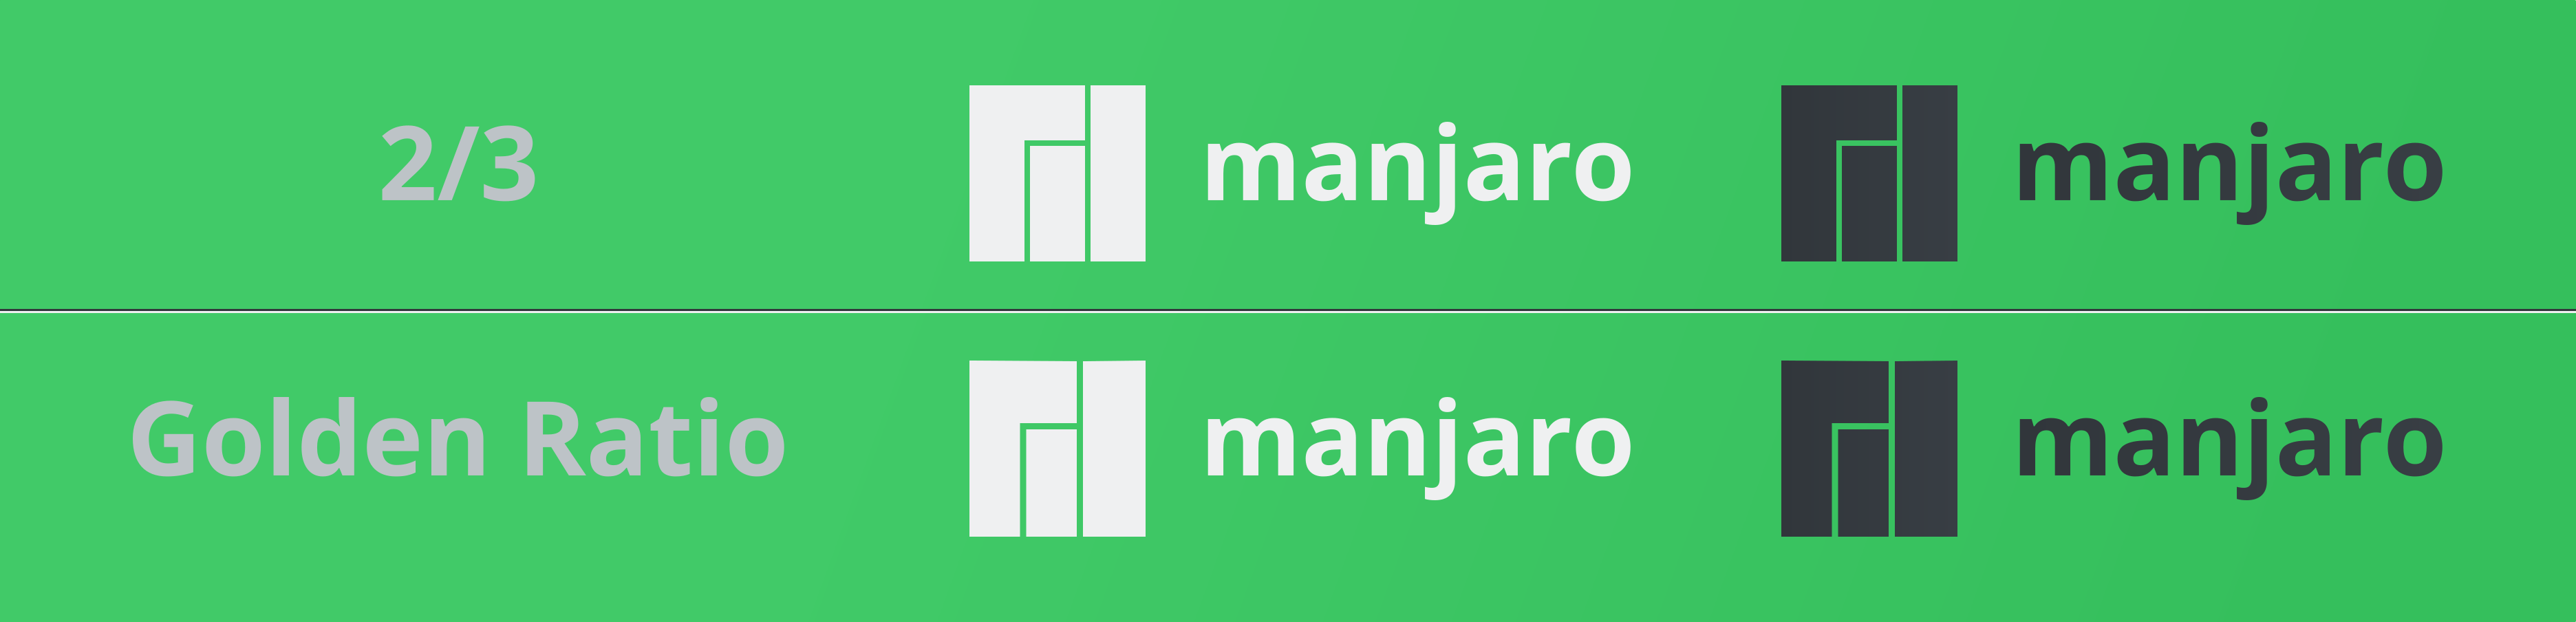 Manjaro Logo - What is Manjaros logo Discussion Linux Forum